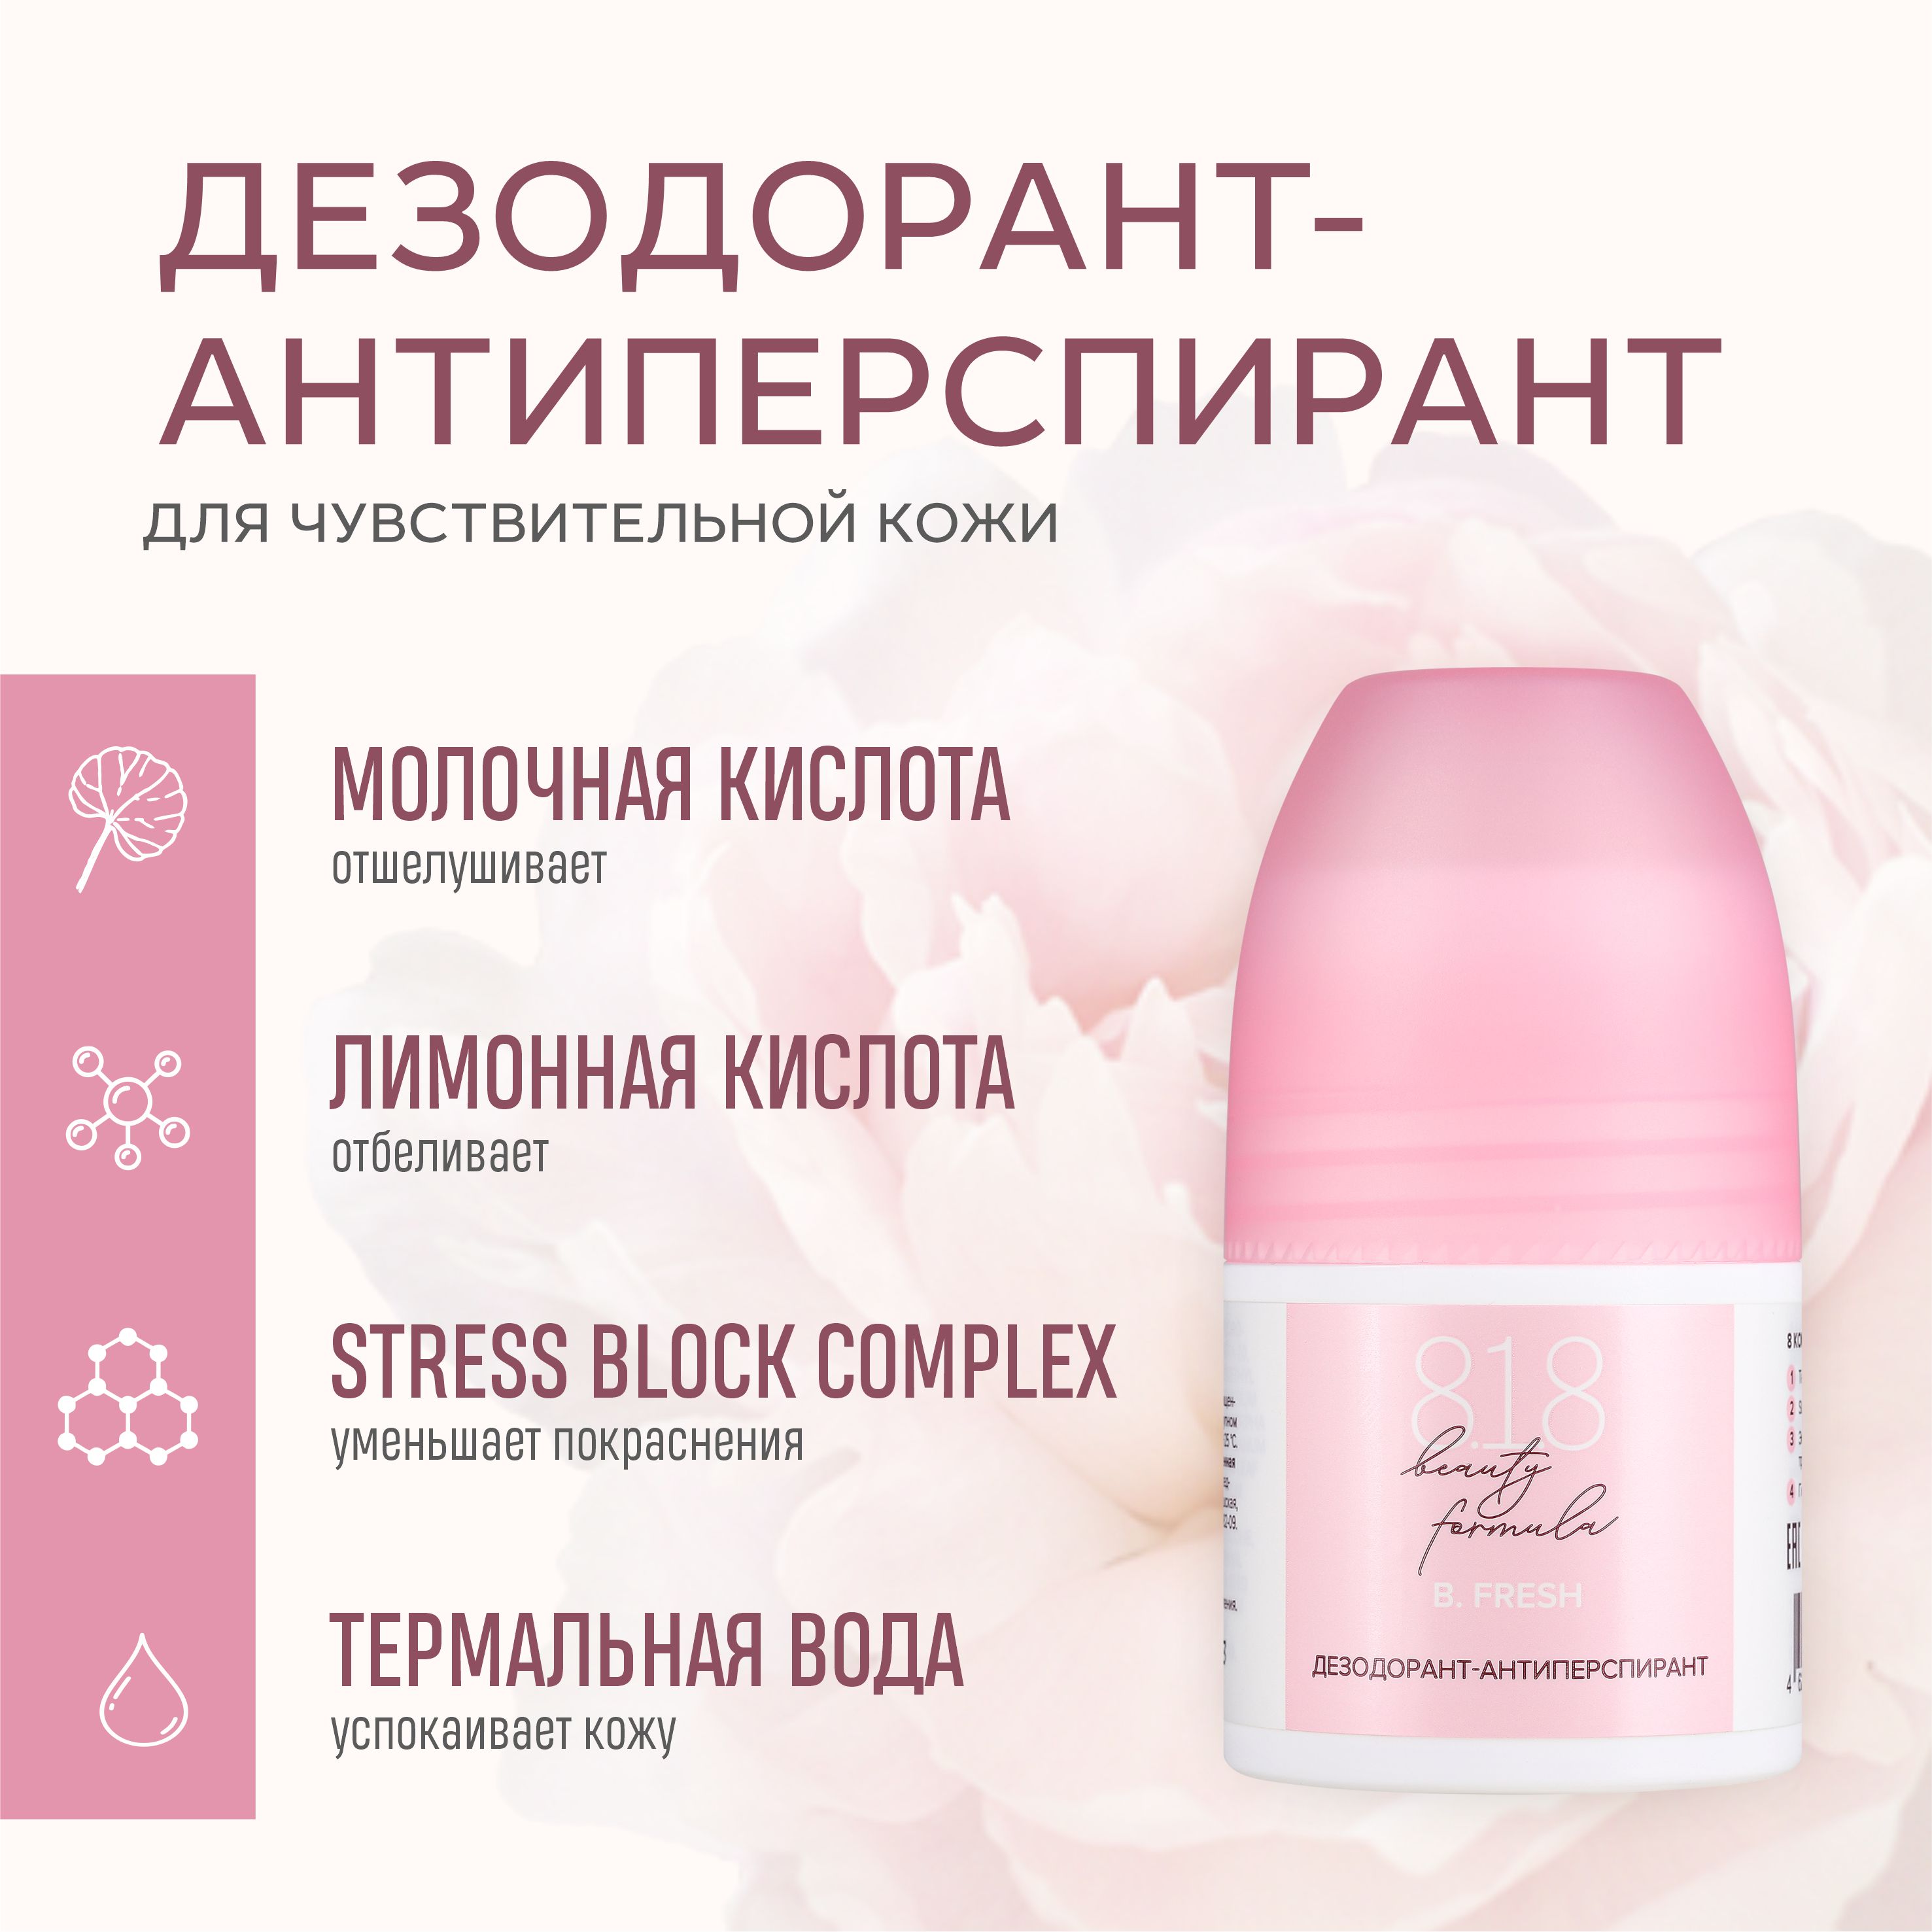 Дезодорант-антиперспирант 818 beauty formula estiqe для чувствительной кожи, 50 мл